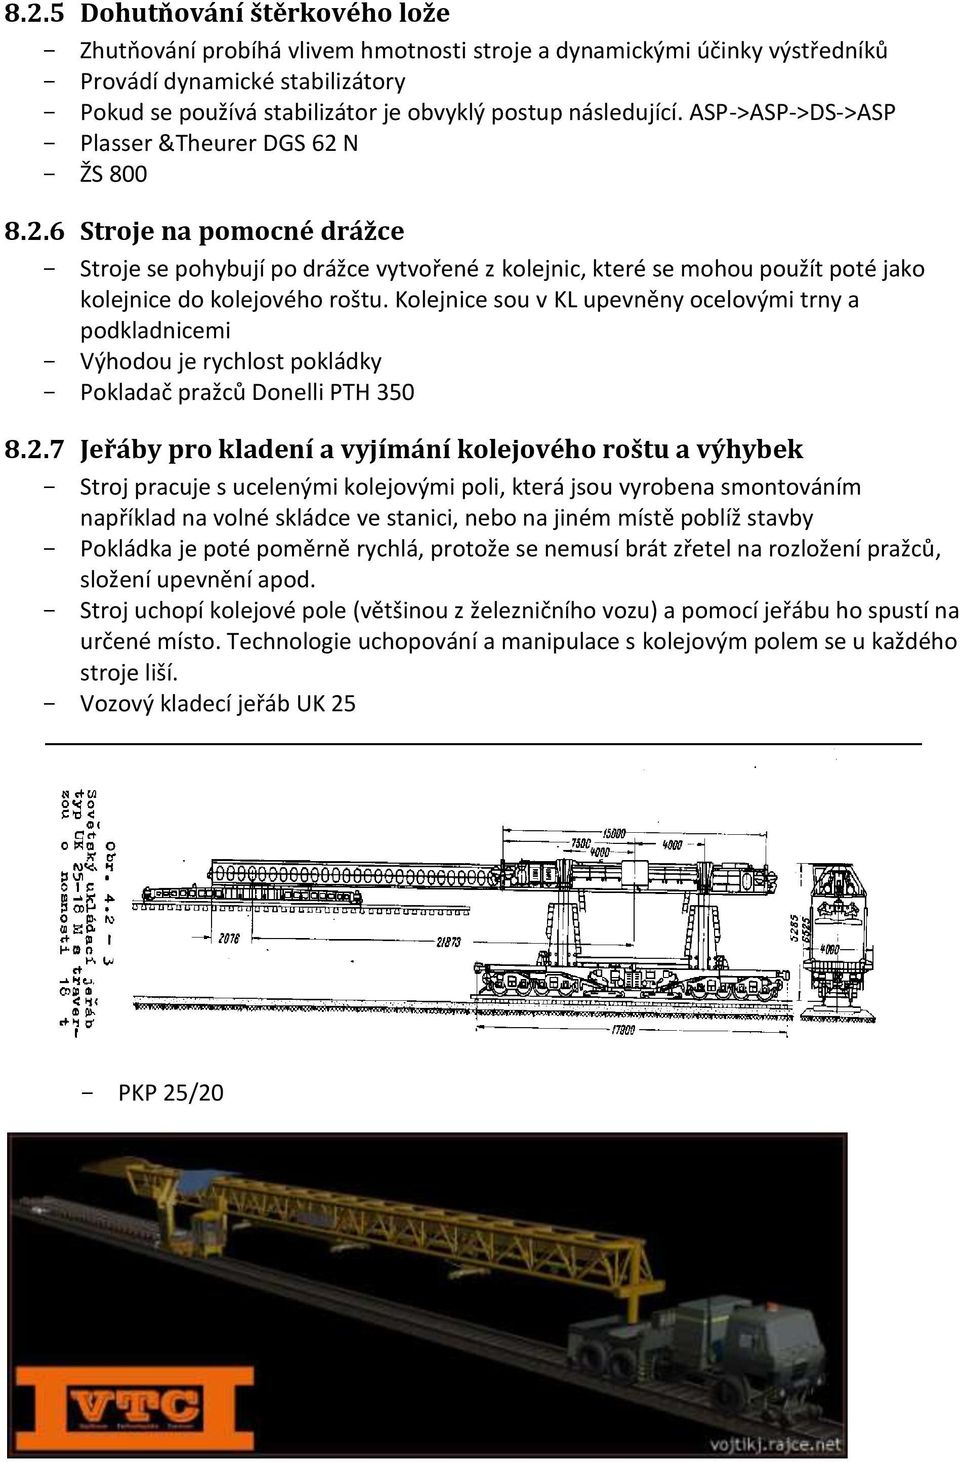 Kolejnice sou v KL upevněny ocelovými trny a podkladnicemi - Výhodou je rychlost pokládky - Pokladač pražců Donelli PTH 350 8.2.